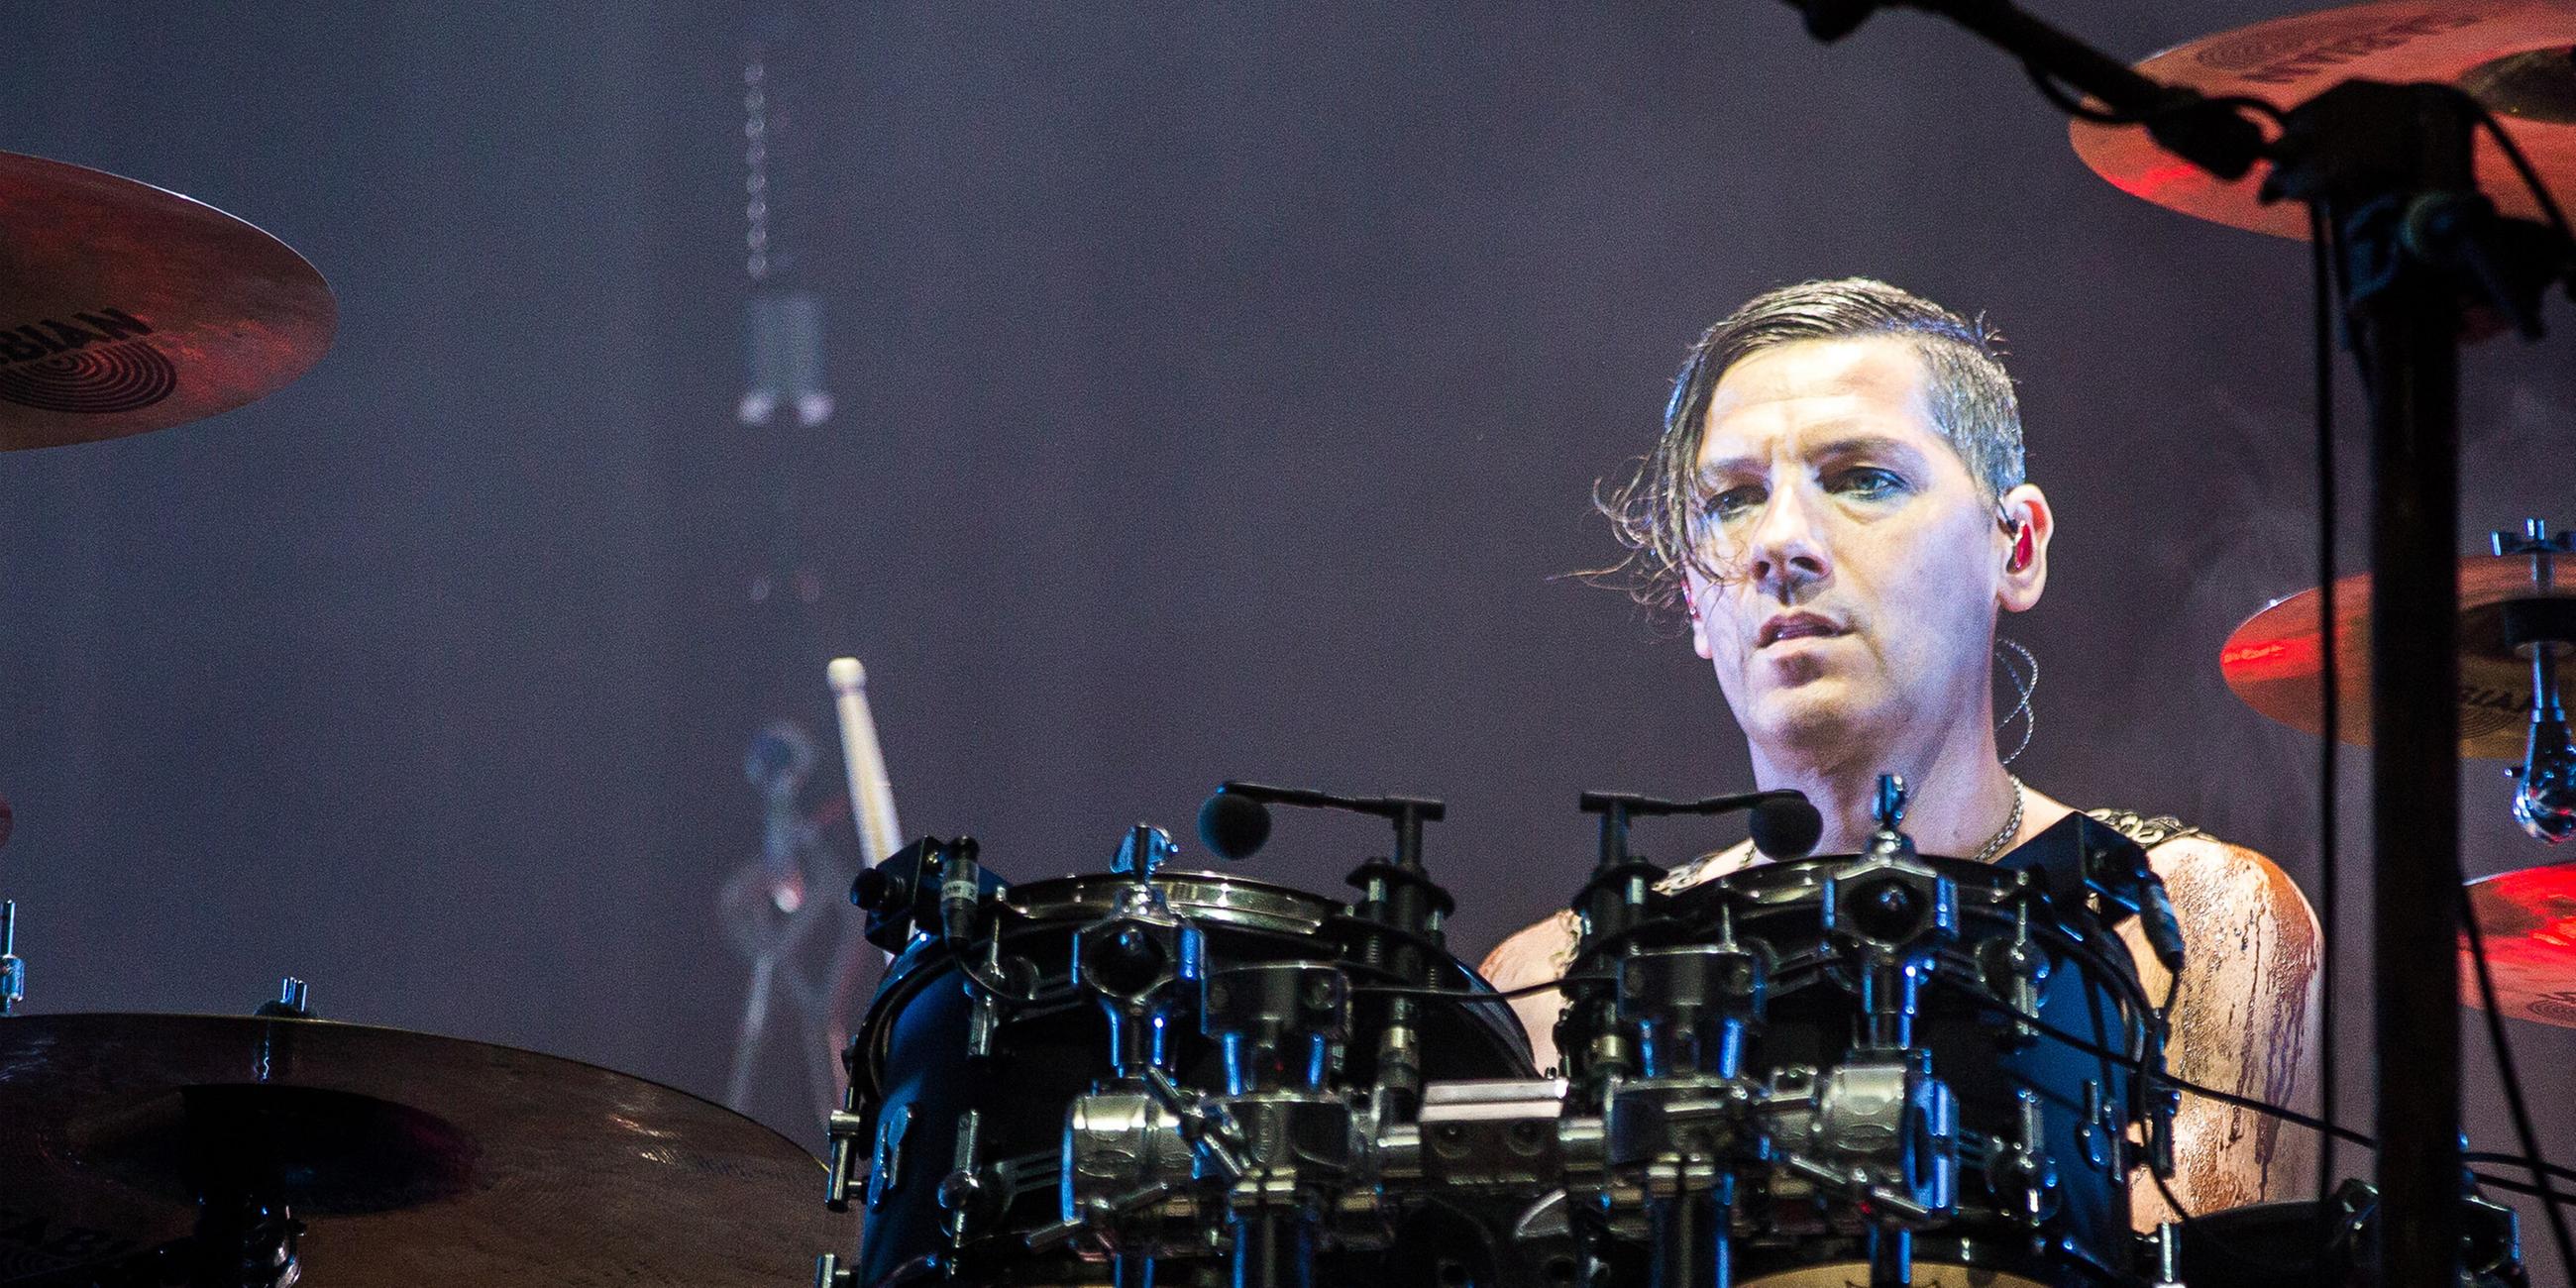 Archiv: Rammstein-Drummer Schneider bei einem Konzert in Odense, Dänemark